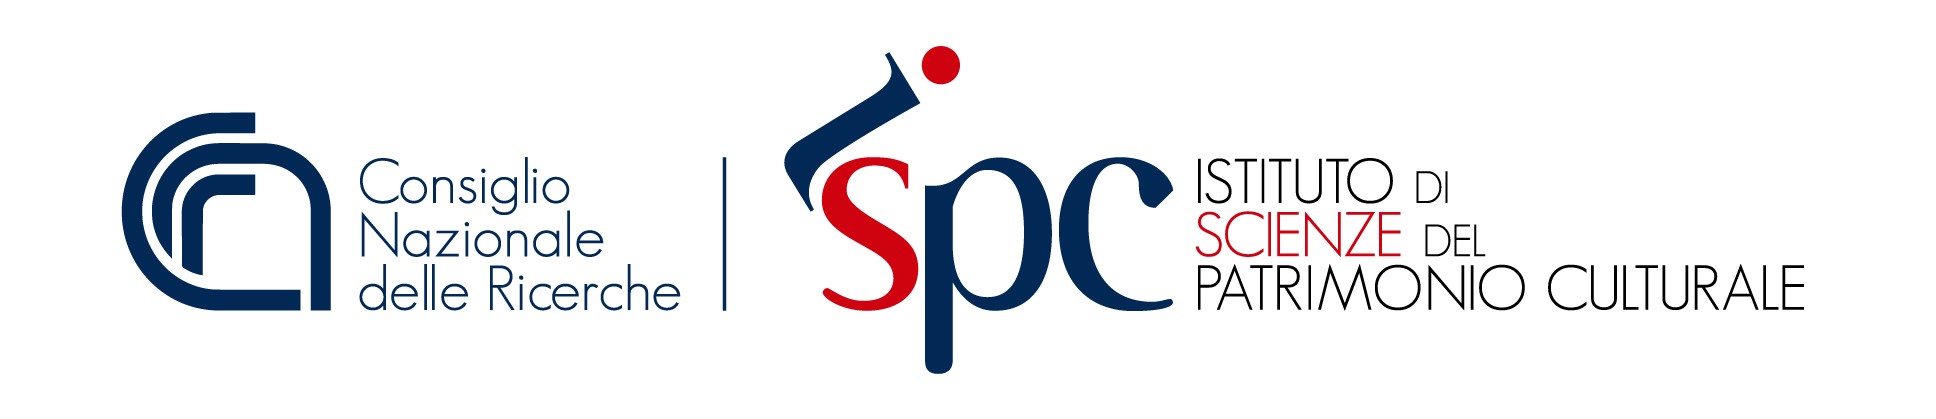 Logo Istituto di Scienze del Patrimonio Culturale (ISPC)